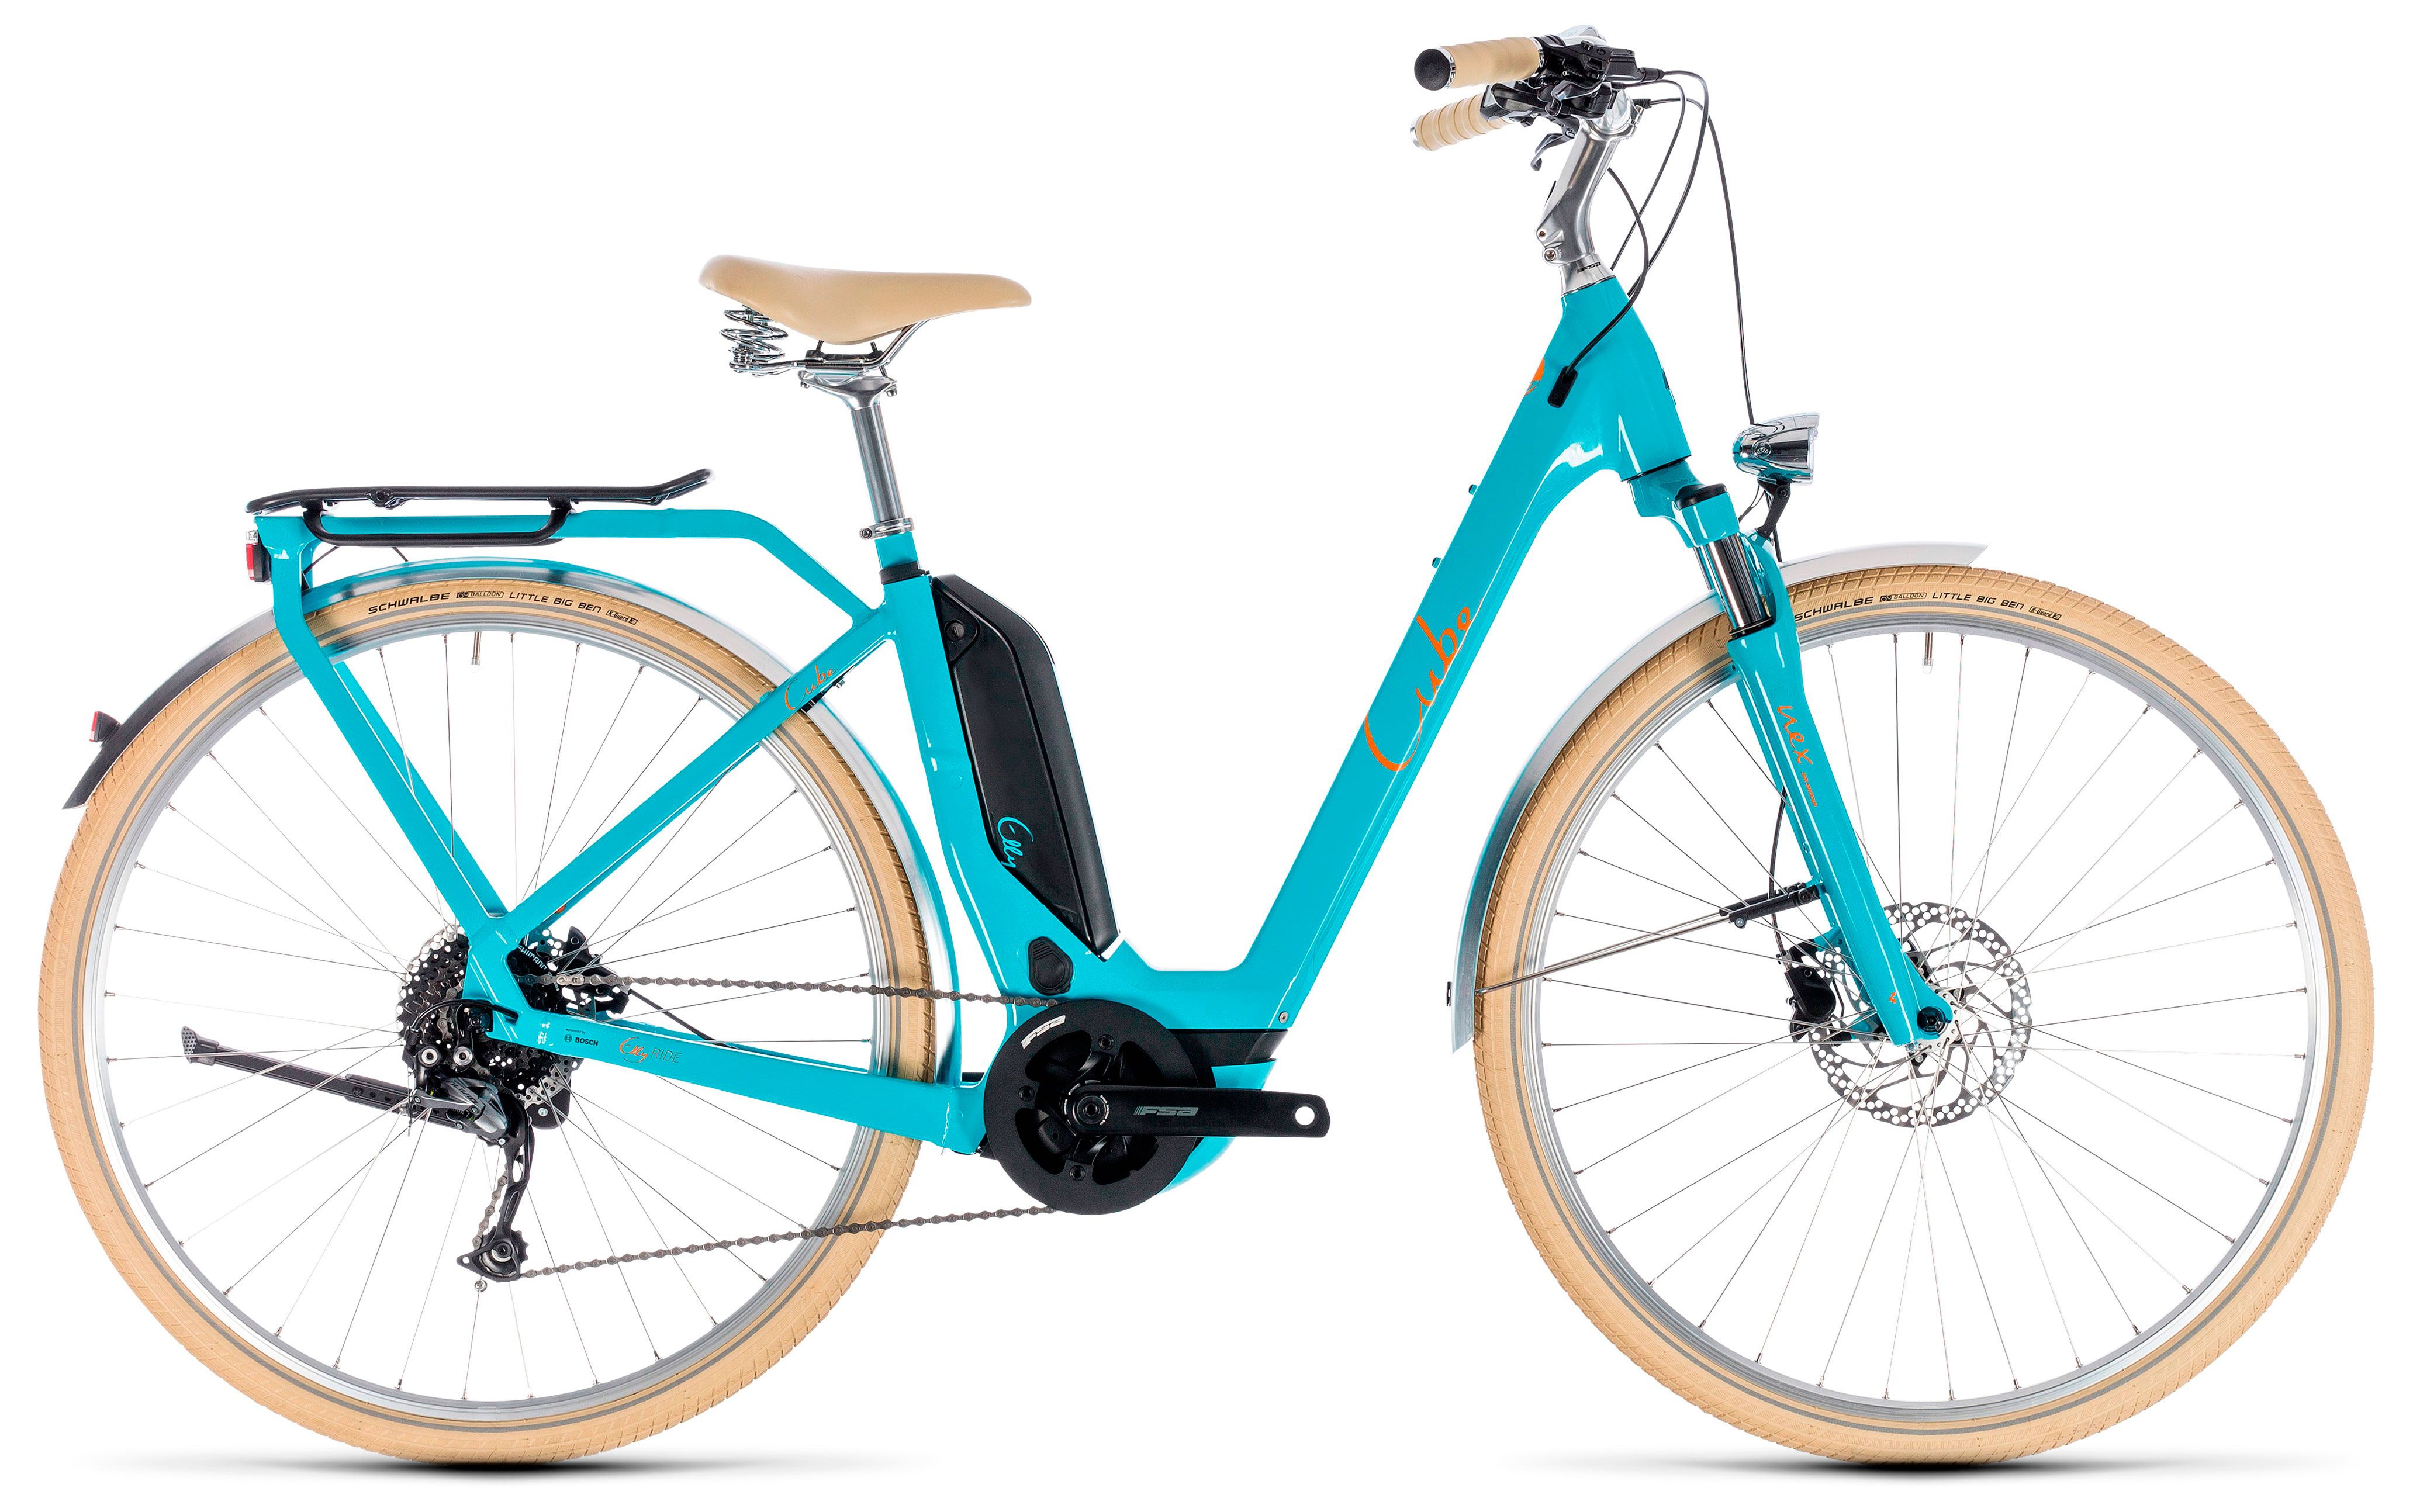  Отзывы о Трехколесный детский велосипед Cube Elly Ride Hybrid 500 2018